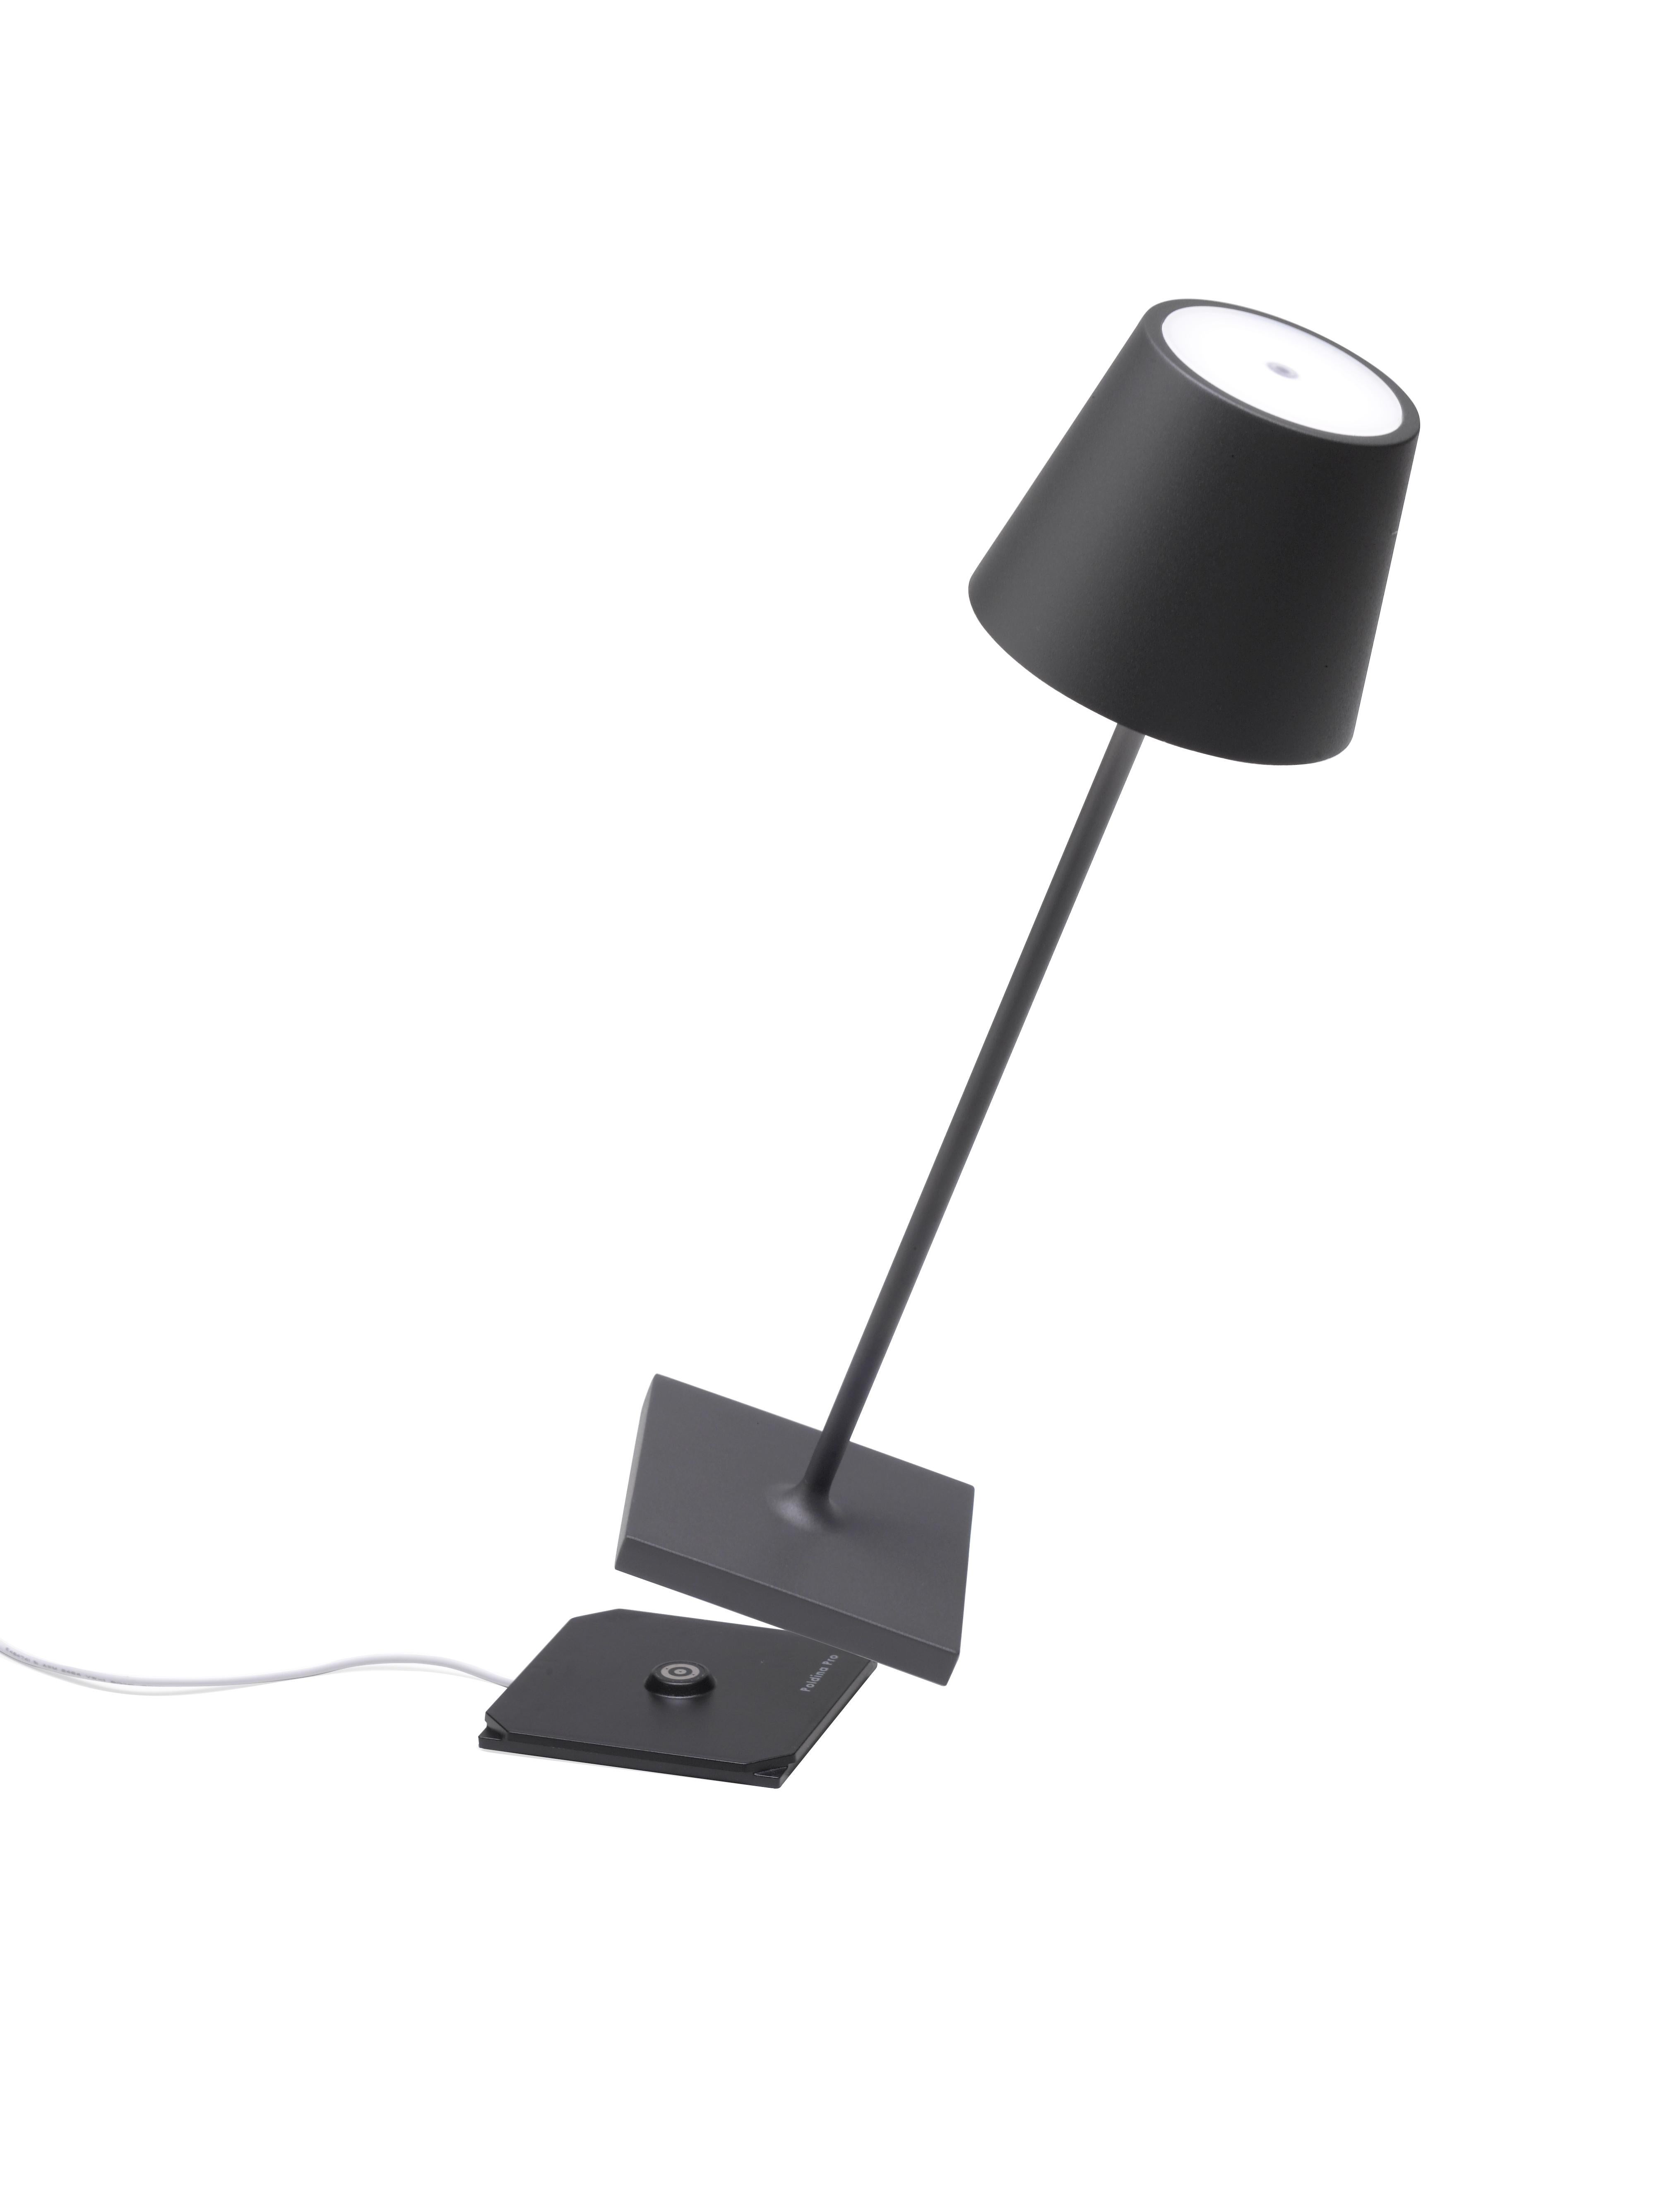 La lumière là où vous la voulez ! La lampe de table Poldina Pro est sans fil, rechargeable, à intensité variable et offre plus de 9 heures d'éclairage sans fil. Vous trouverez ci-dessous les autres caractéristiques de la lampe qui en font la lampe